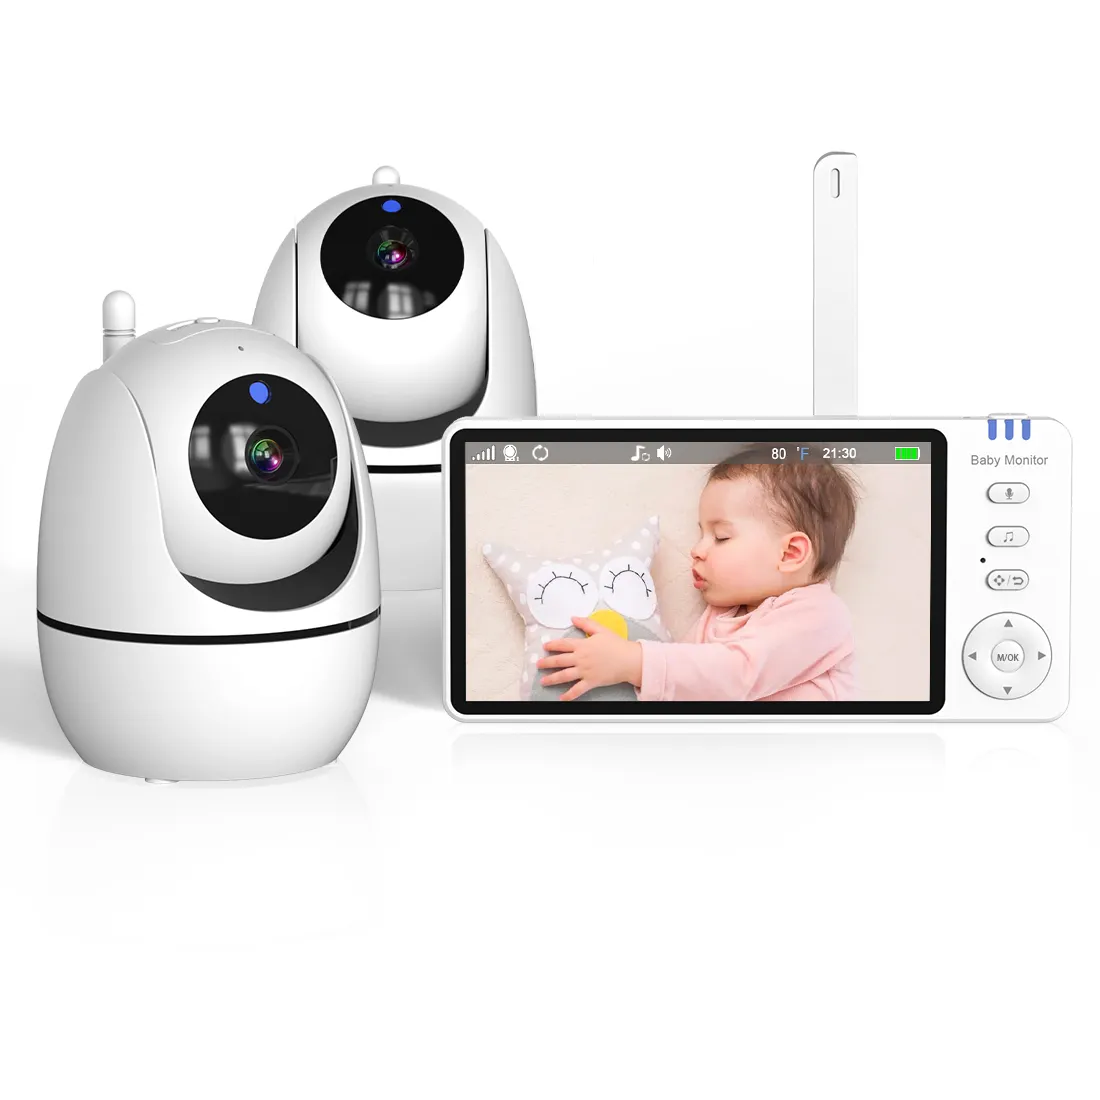 Le plus récent 5.0 pouces bidirectionnel Audio température Vision nocturne bébé pleurer détection surveillance vidéo bébé moniteur avec caméra